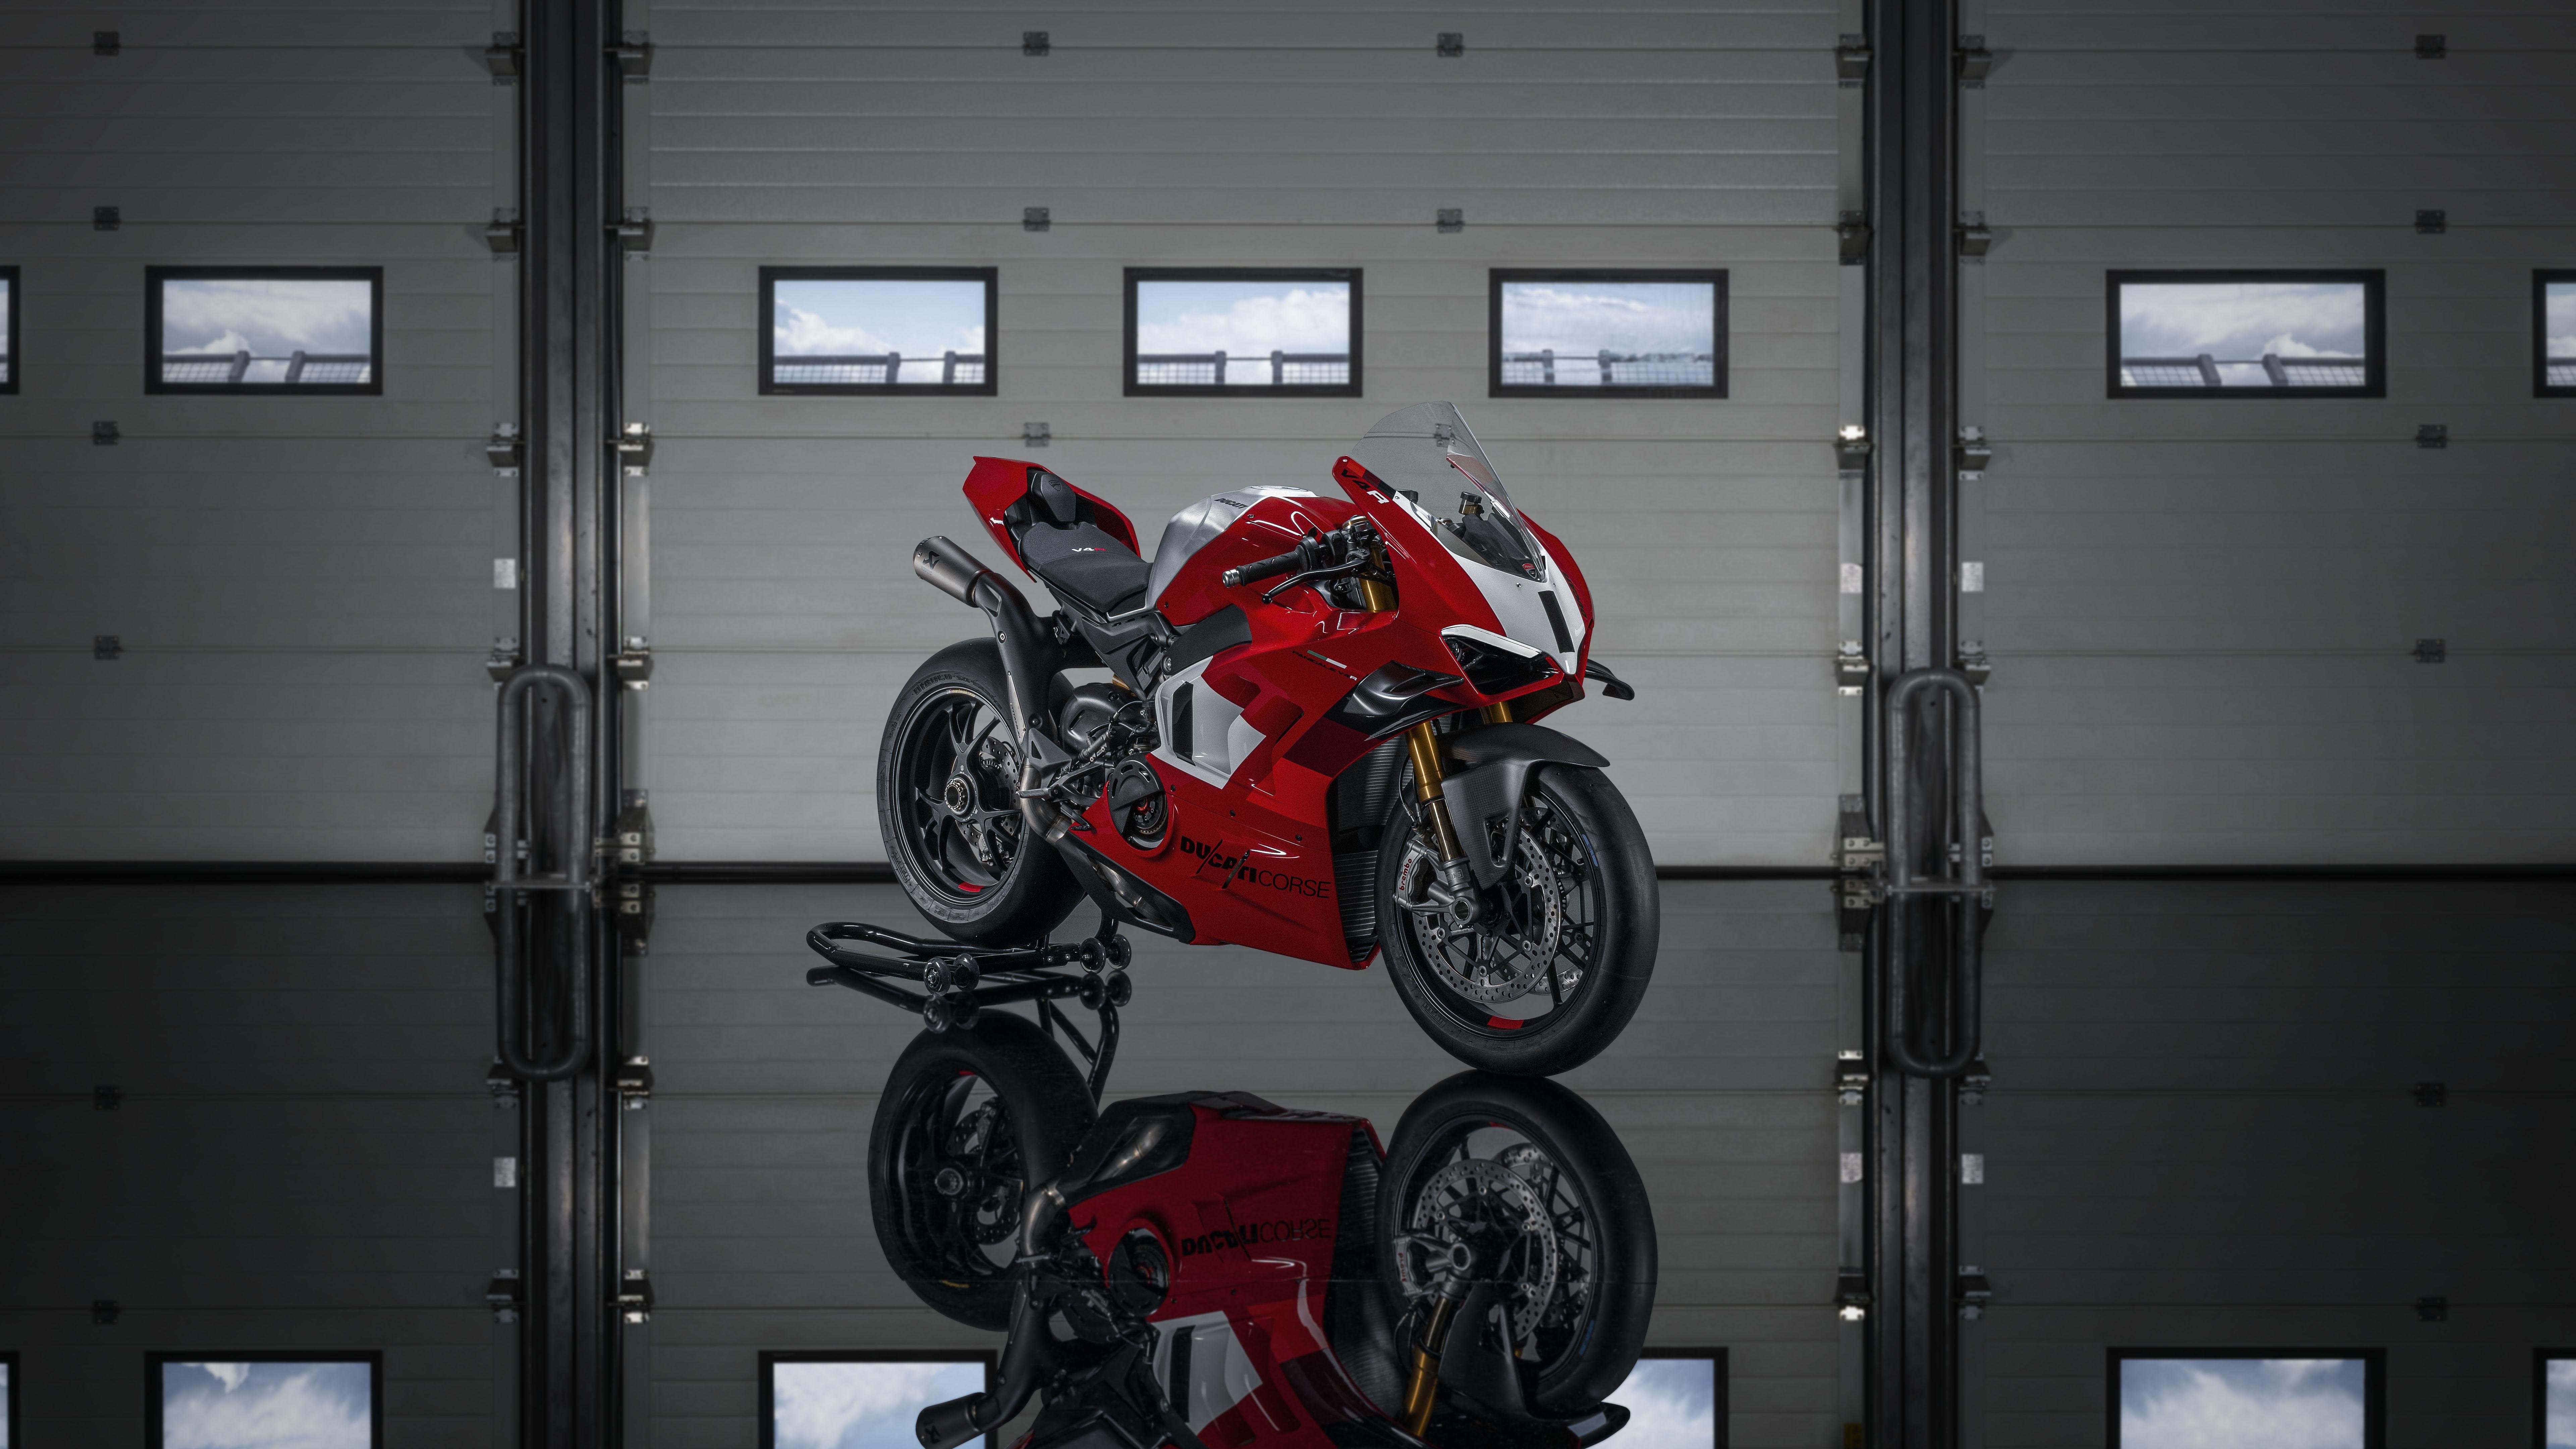 Ducati Panigale V4 R Wallpaper 4K, Sports bikes, 5K, 8K, Bikes, #8866